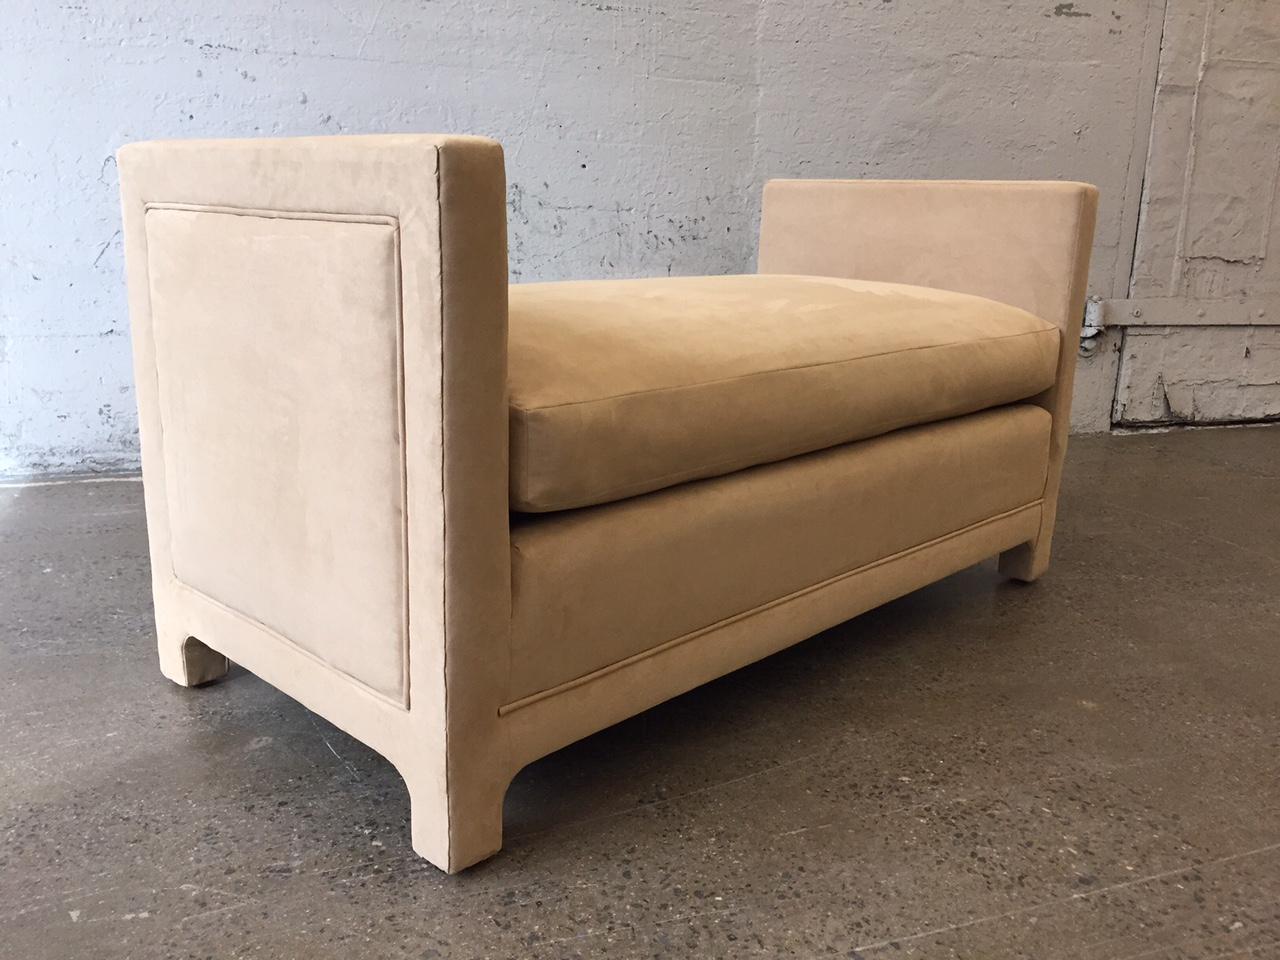 Les originaux de Flavor Custom Design sont des bancs surdimensionnés dans le style de Milo Baughman. Le banc est recouvert d'un tissu ultra-suède et possède une assise à coussin libre.
Fait partie de la gamme de meubles Flavor Custom Design (FCD).